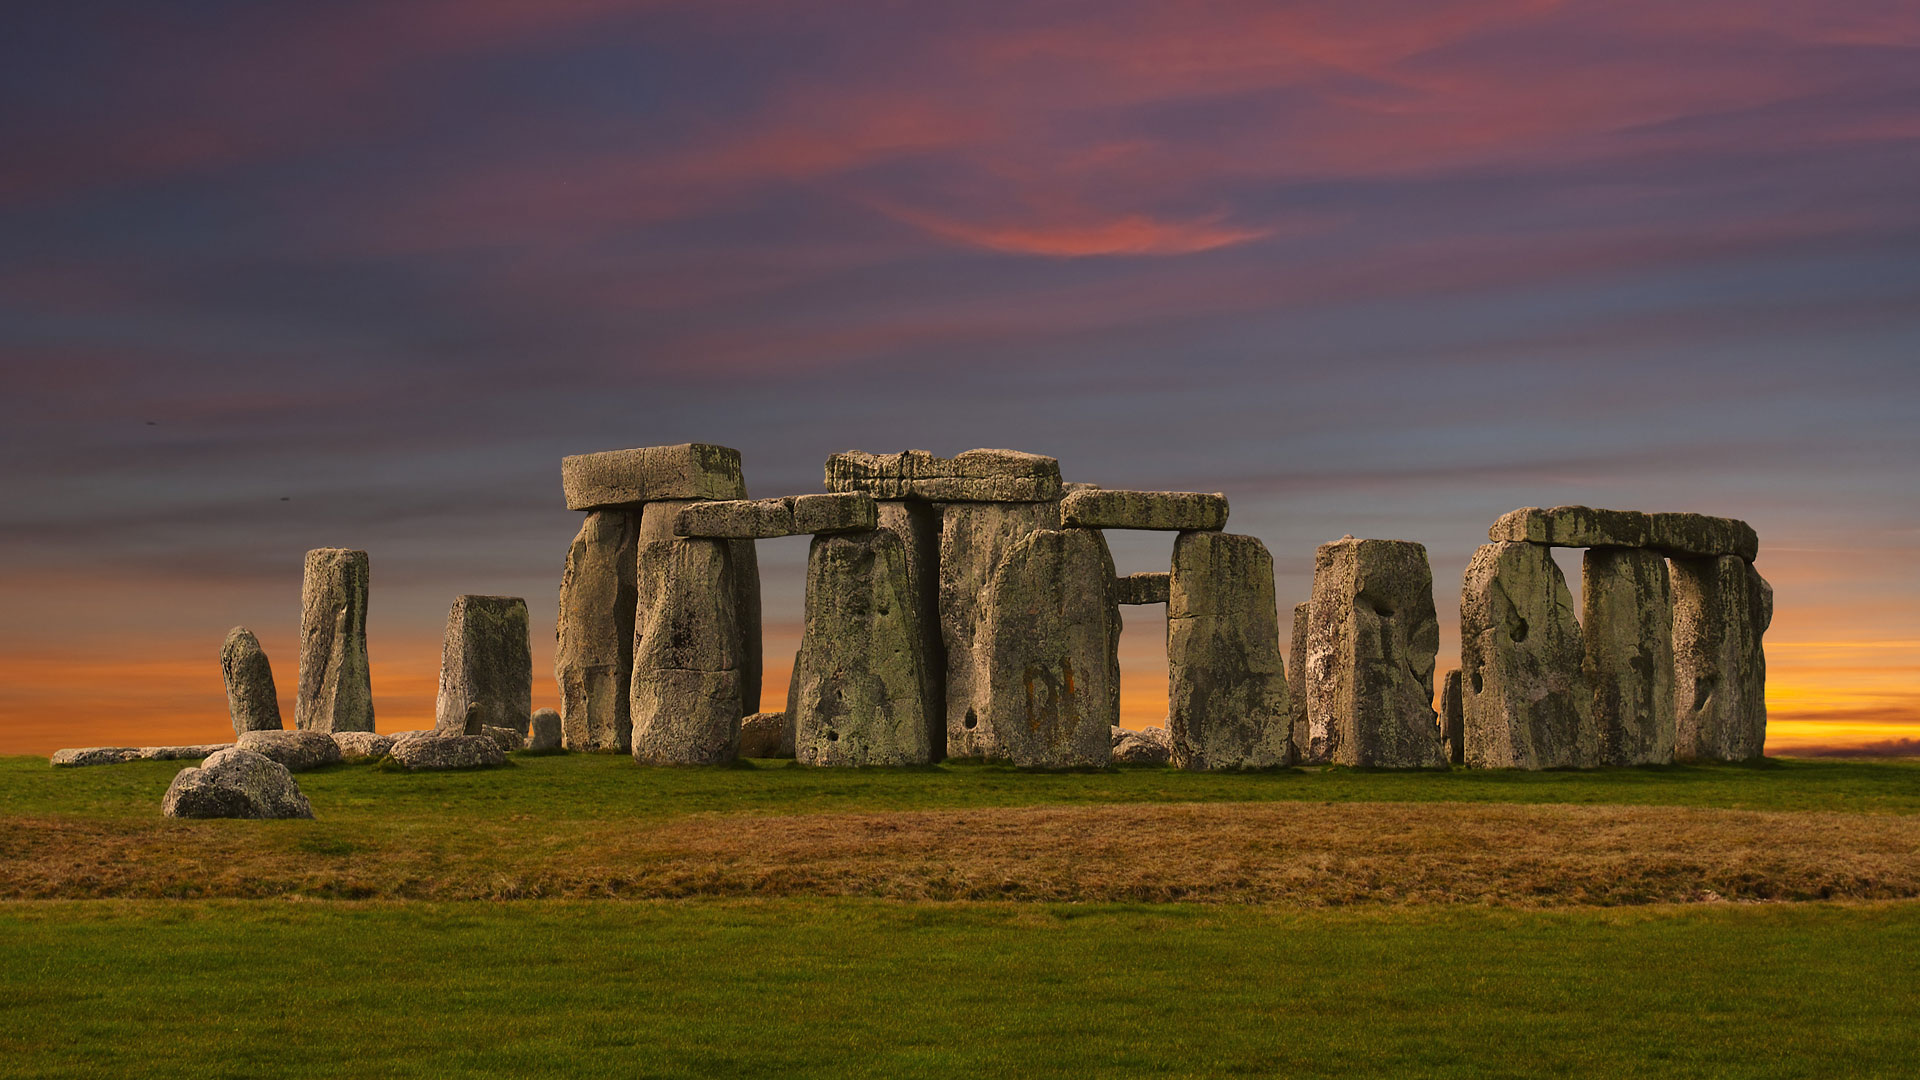 Stonehenge on esihistoriallinen monumentti Englannin Wiltshiressa. Se on megaliiteista koostuva neoliittinen ja pronssikautinen kivikehä.